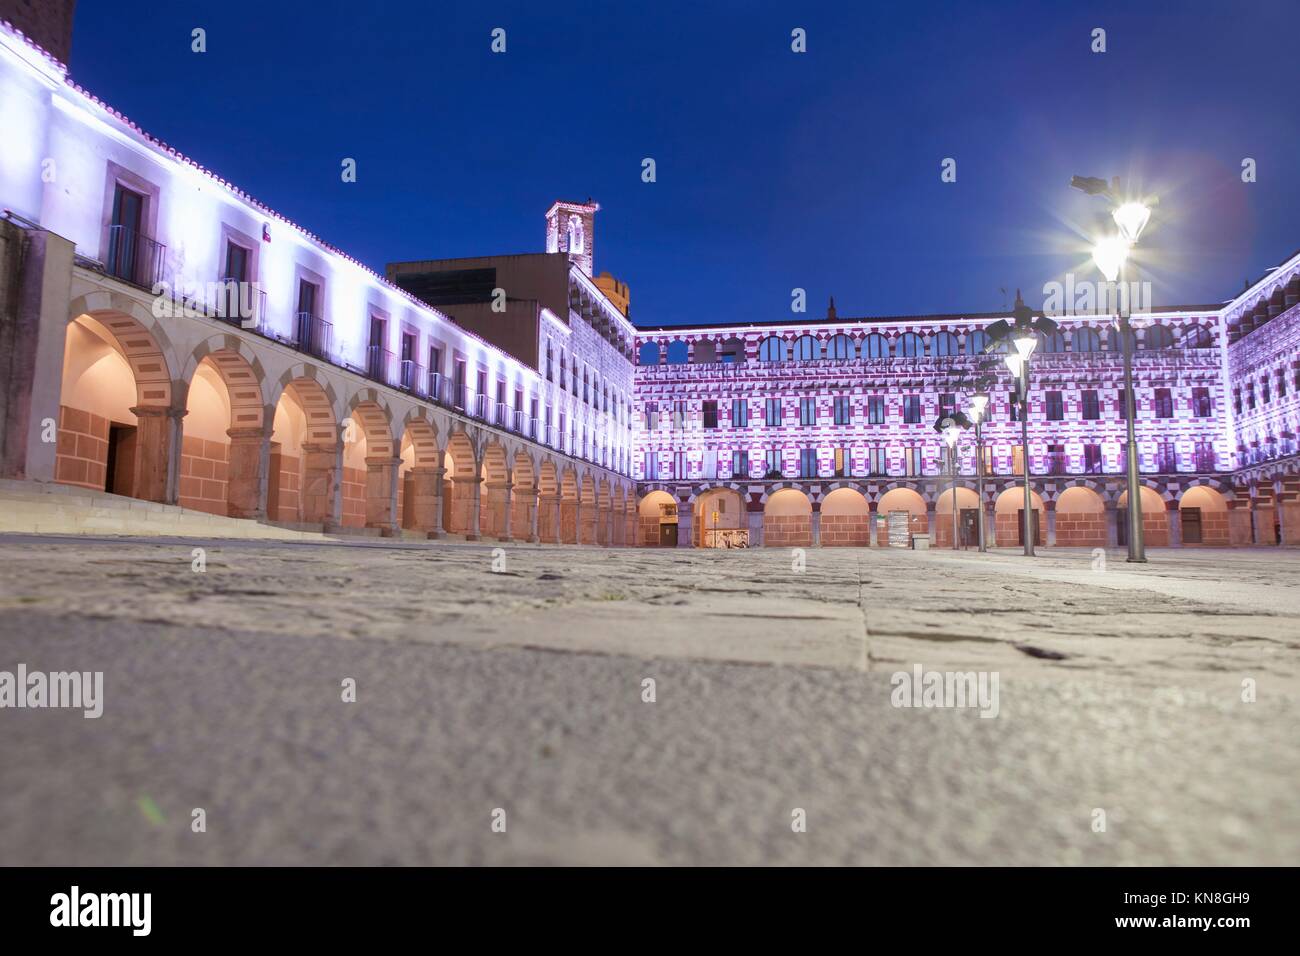 Plaza alta de Badajoz, iluminado por luces LED en penumbra. Vista desde el ángulo bajo el piso. Foto de stock